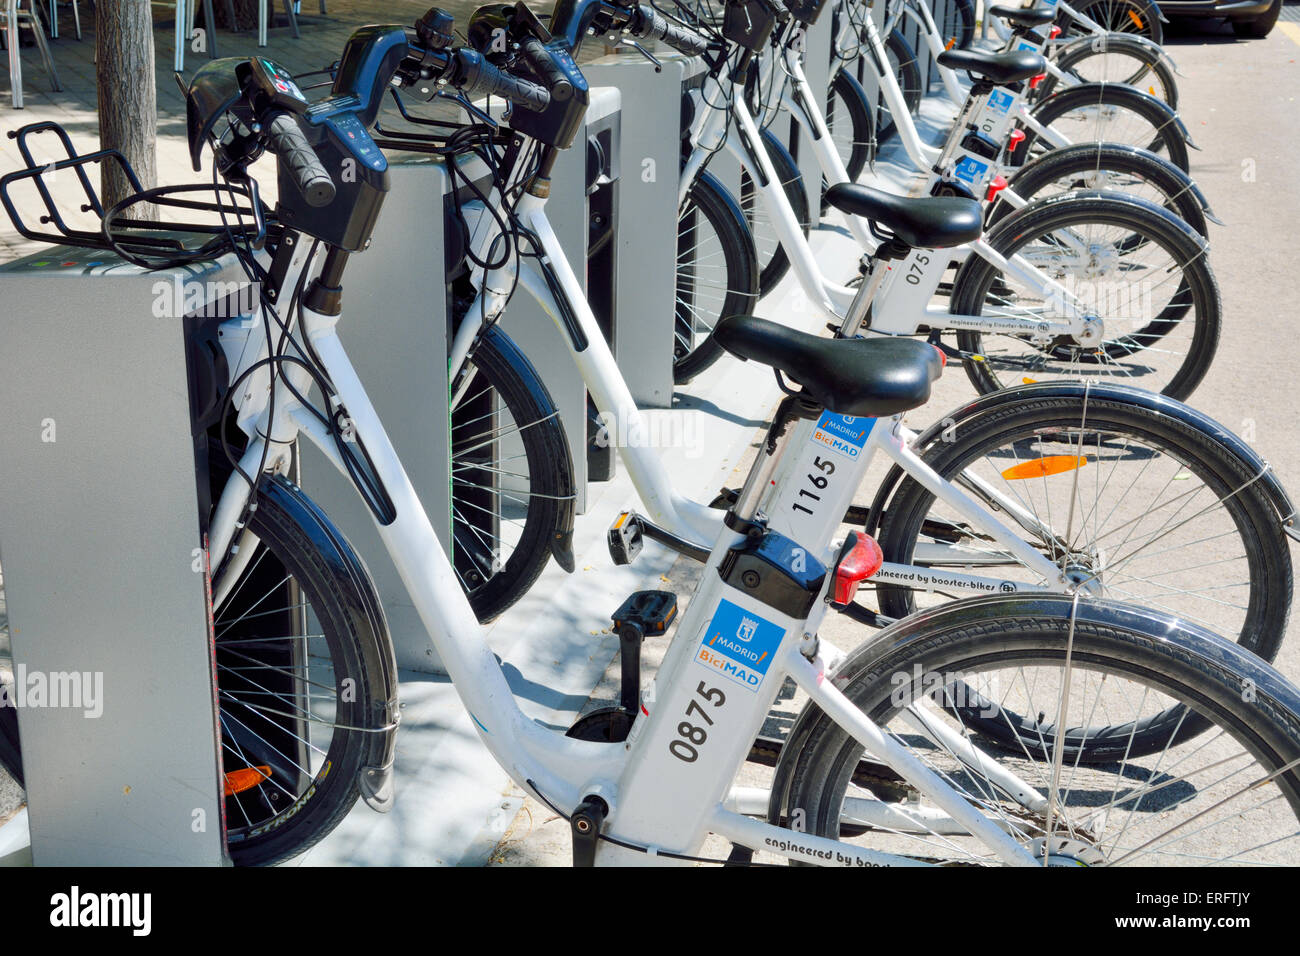 Reihe für mieten BiciMad e-Bikes in der Ladestation steht, Madrid, Spanien Stockfoto